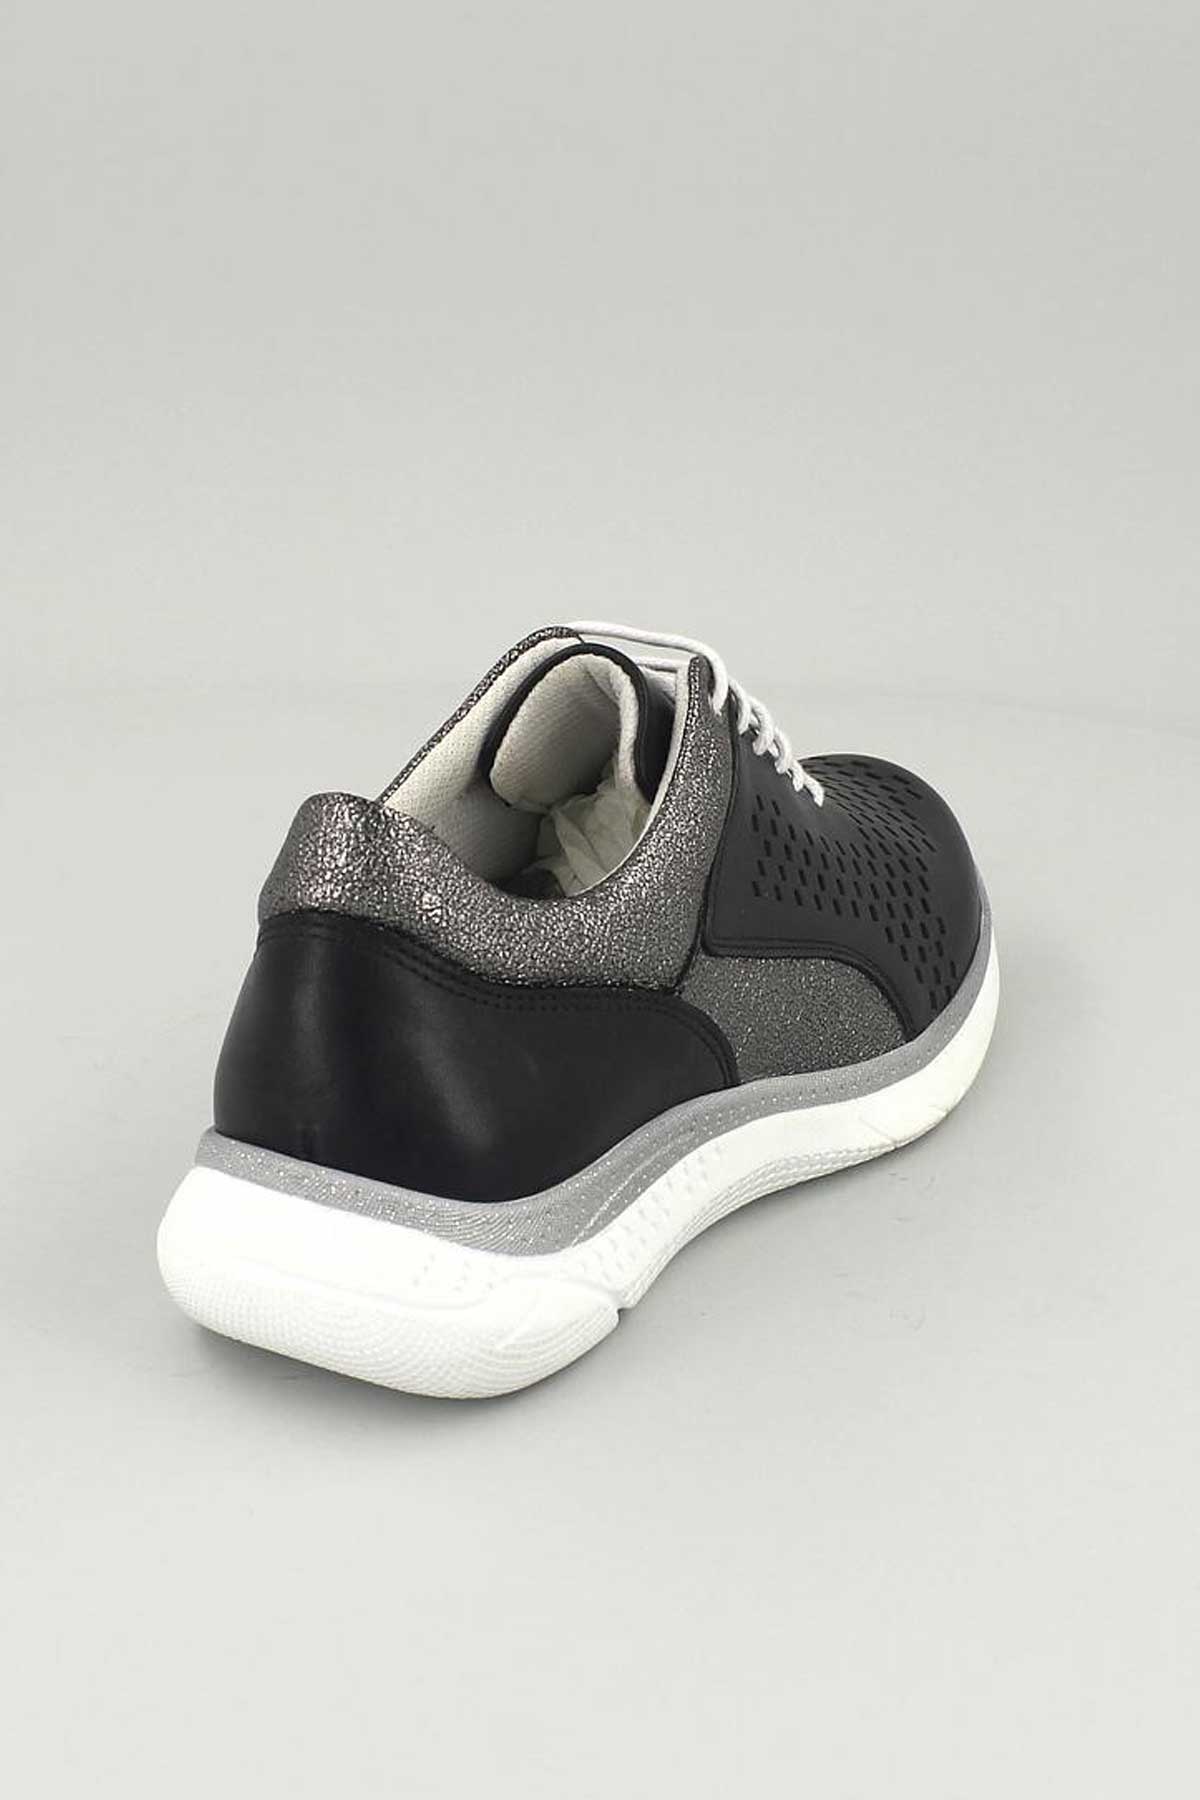 Kadın Deri Sneakers Siyah 13785Y - Thumbnail